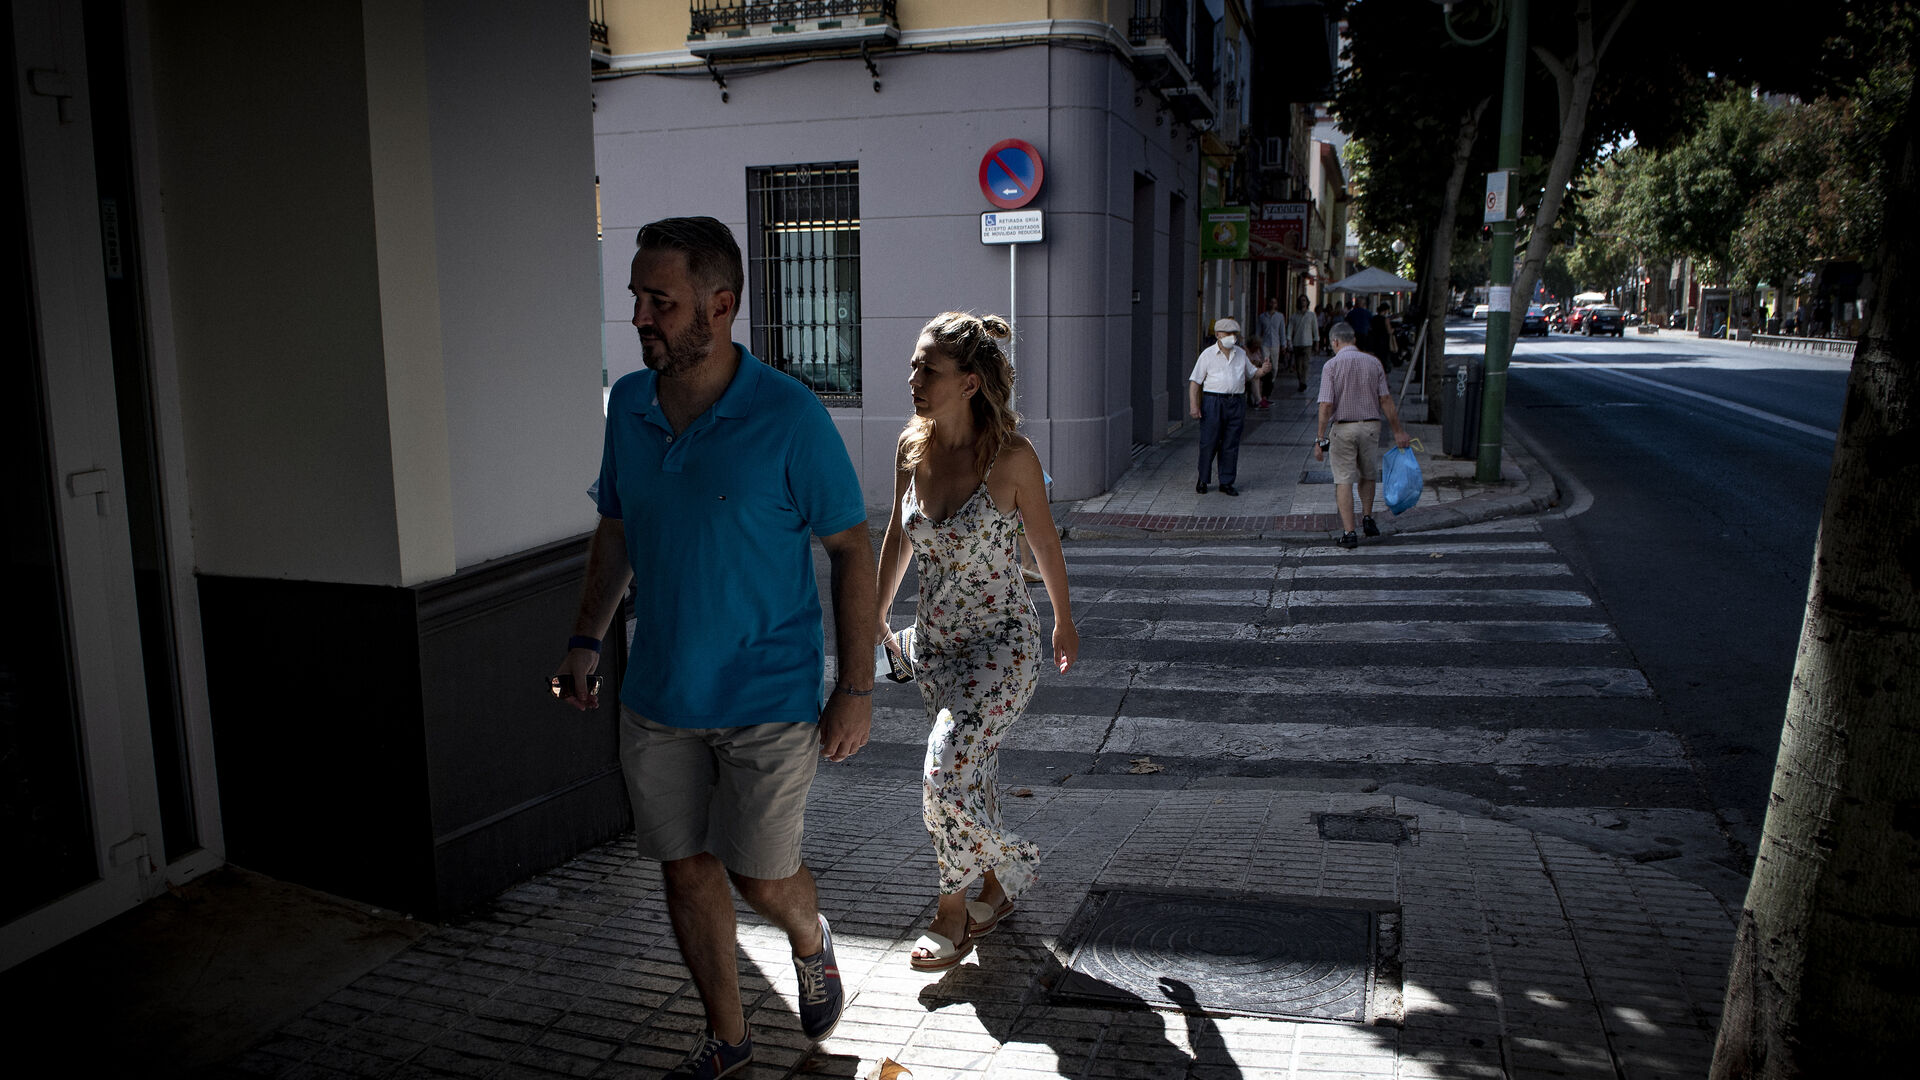 Septiembre en Sevilla: mucho calor y poca sombra